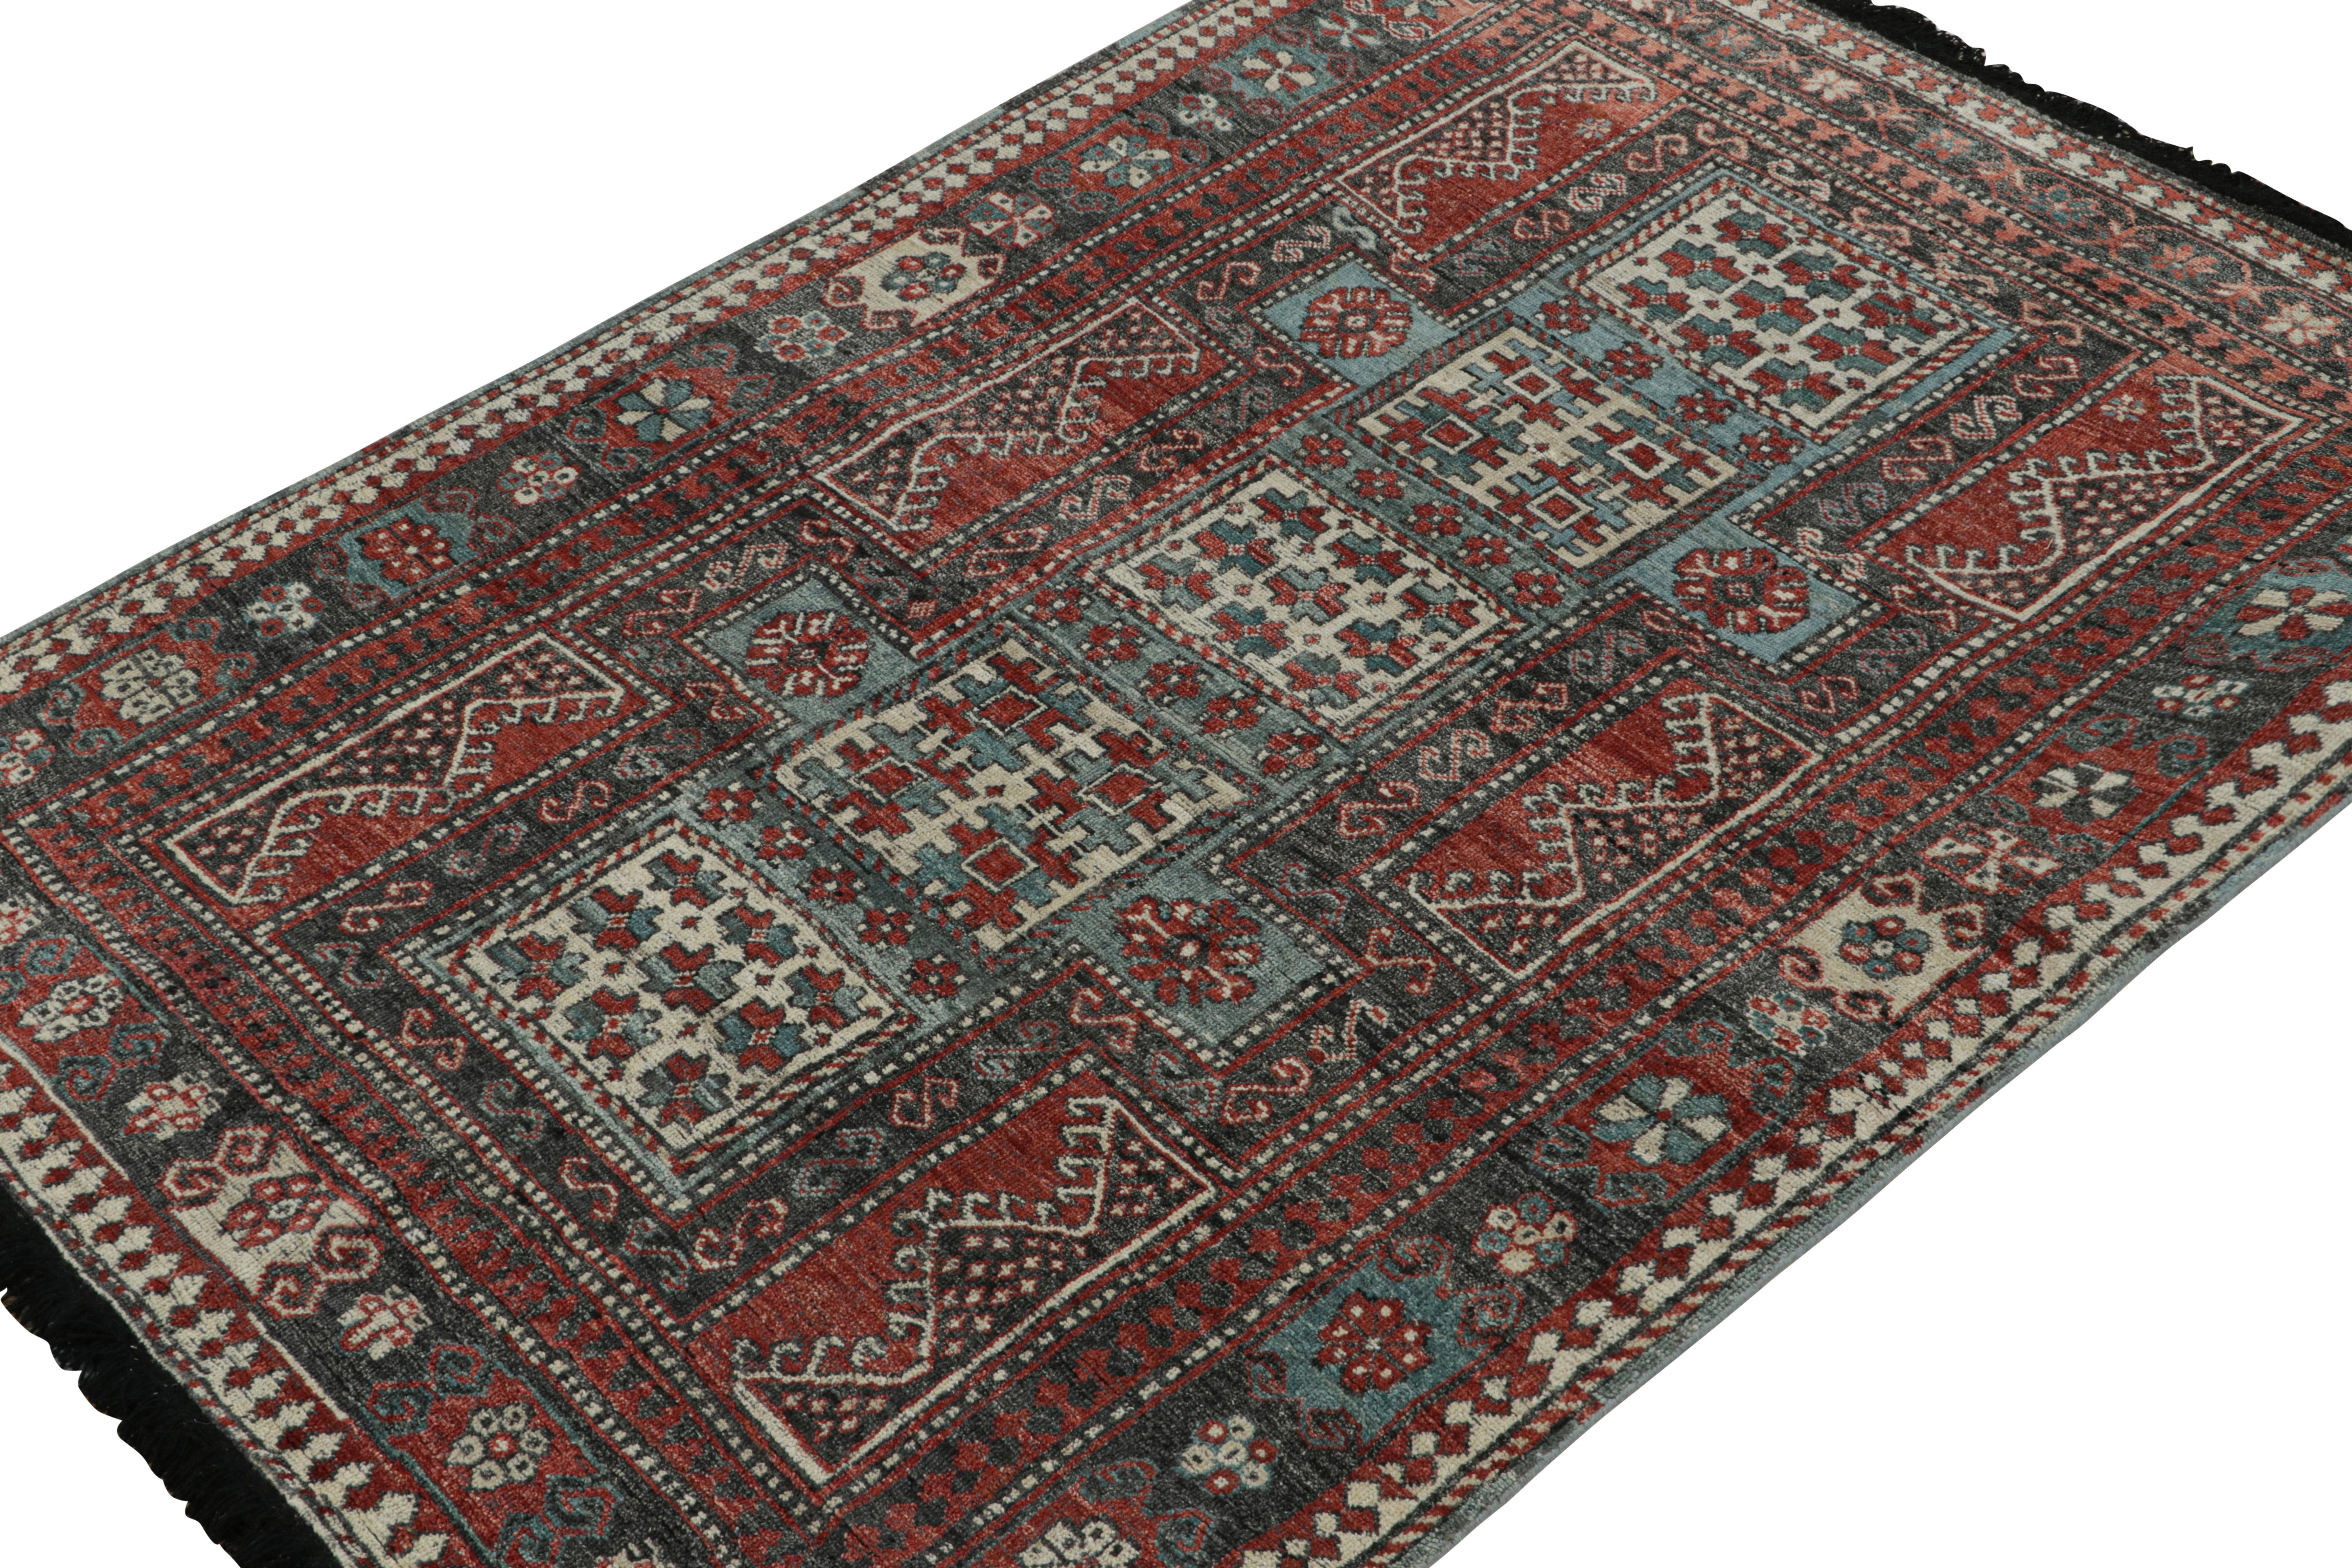 Ce tapis de 5x7 est une nouvelle entrée grandiose dans la collection Burano de Rug & Kilim. Noué à la main en laine persane.

Plus loin dans le Design : 

Inspiré des anciens tapis tribaux, ce tapis se délecte de bleu, de rouge et de noir avec un